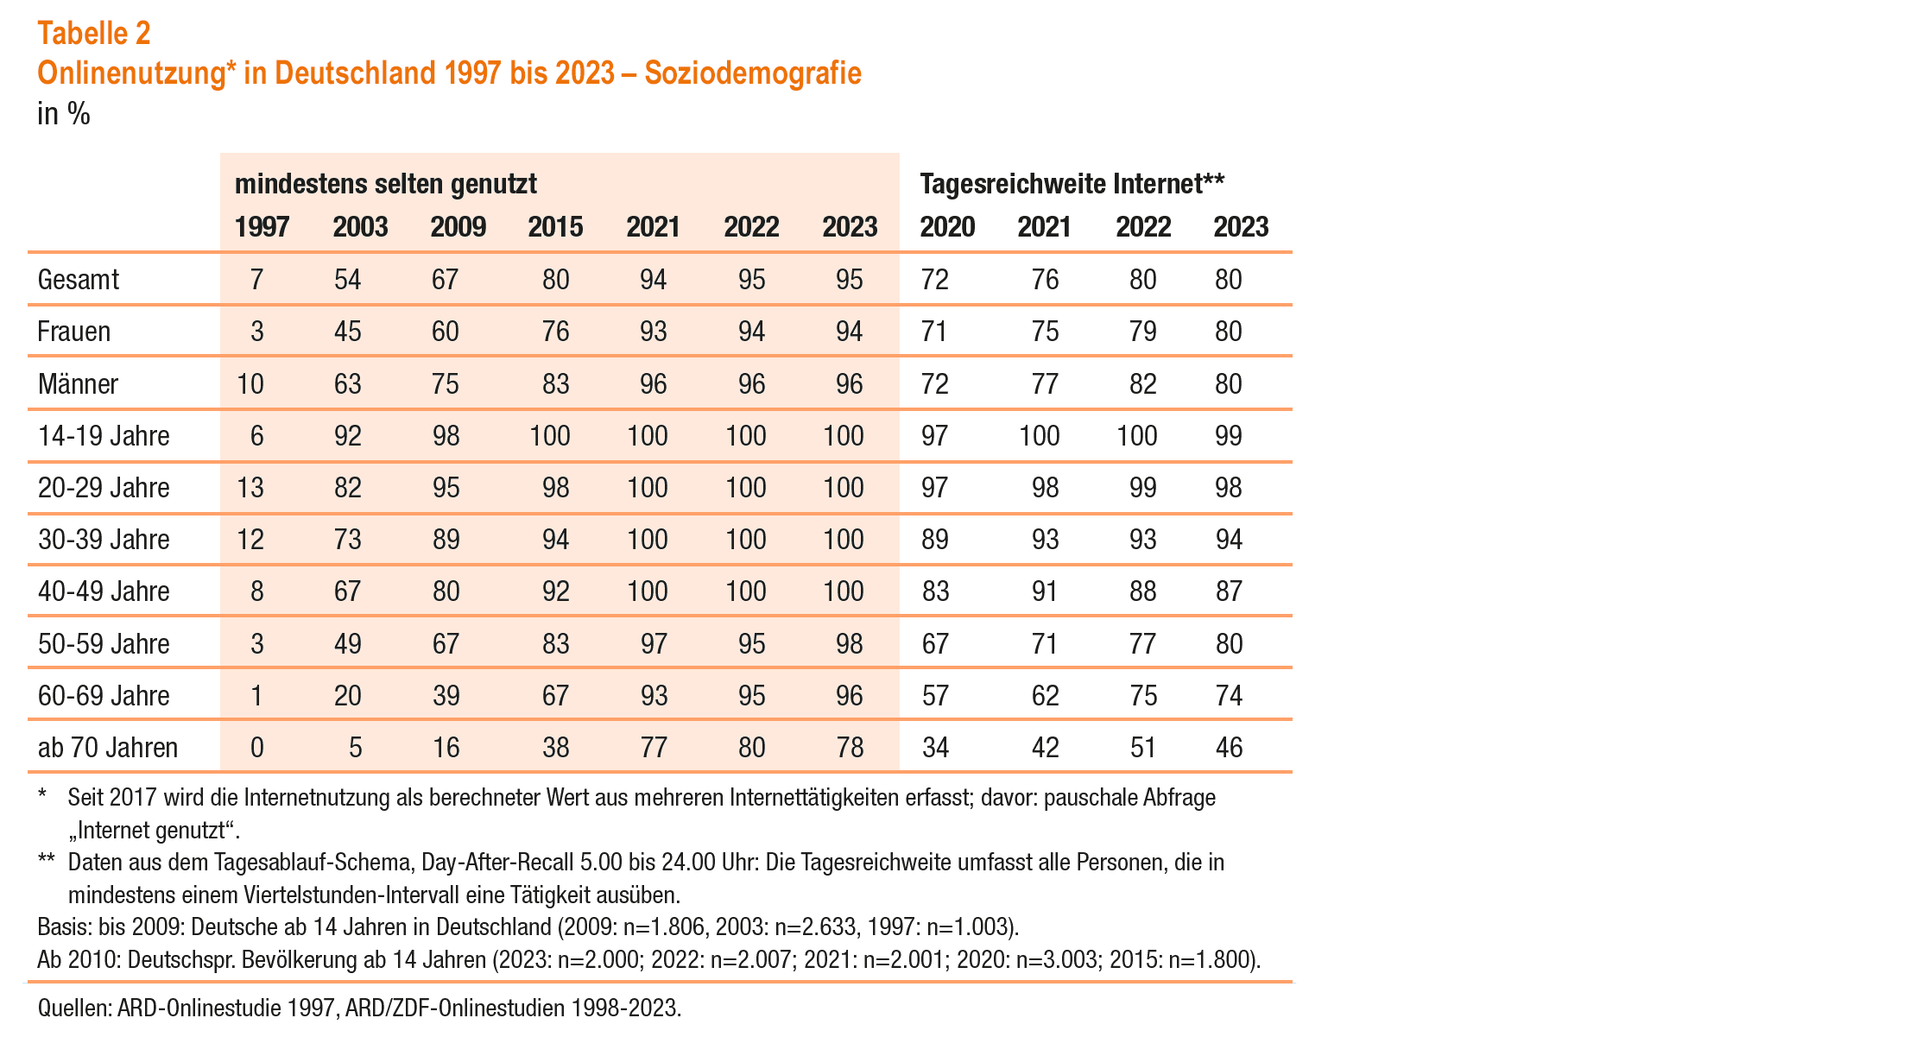 Onlinenutzung in Deutschland 1997 bis 2023 – Soziodemografie (© ARD/ZDF-Onlinestudie)